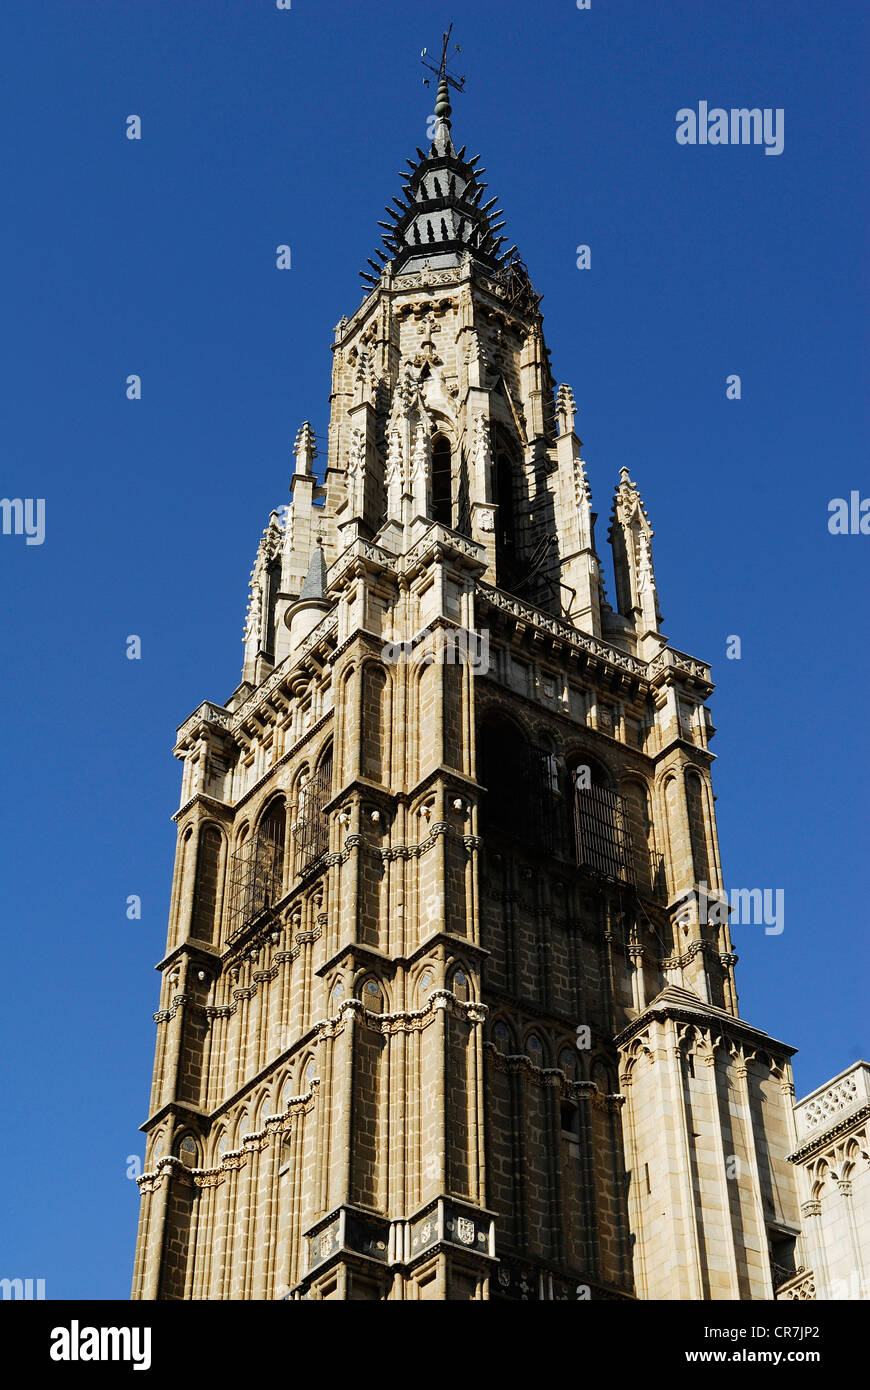 Spagna, Castilla la Mancha, Toledo, storica città patrimonio mondiale dell'UNESCO, il campanile della Cattedrale Primate di Santa Maria Foto Stock